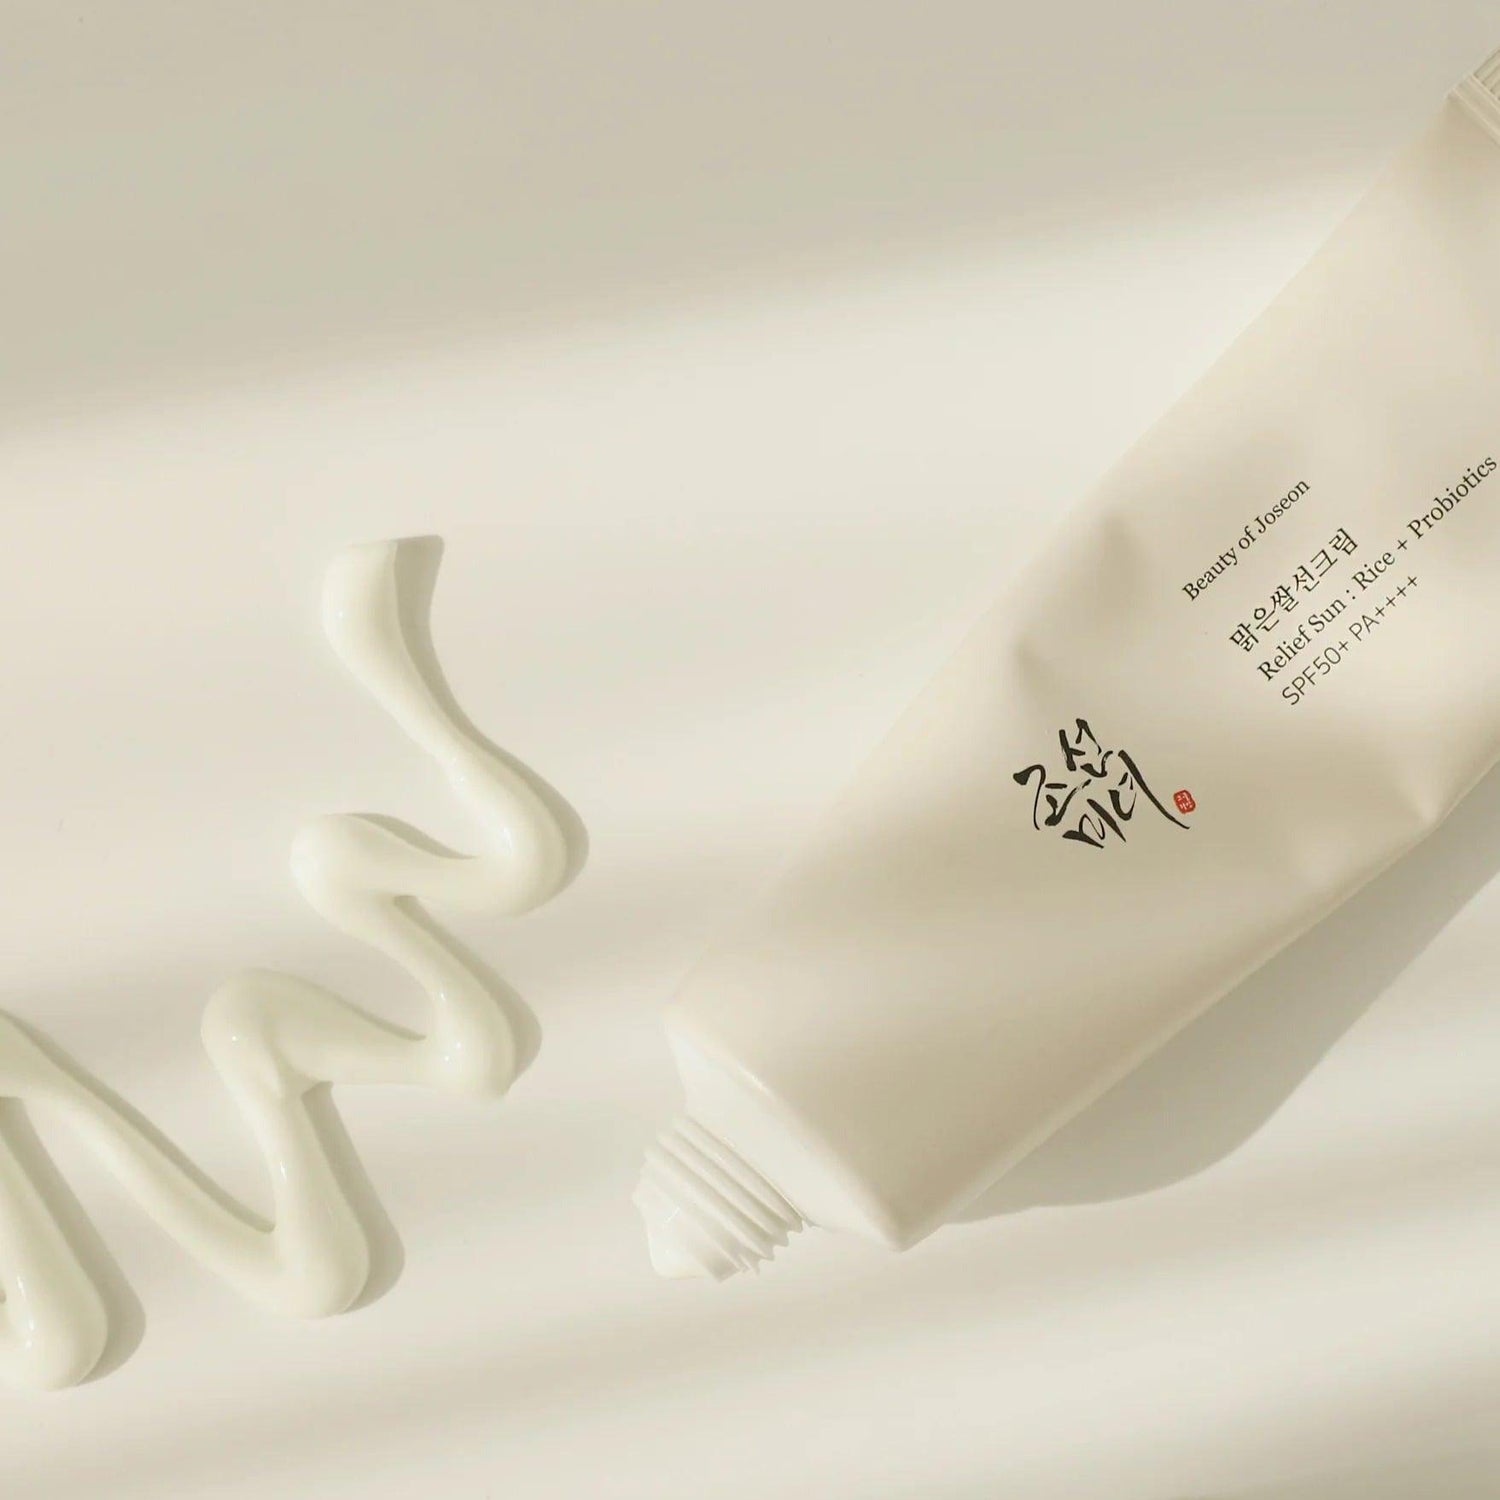 Beauty Of Joseon - Crème Solaire Relief Sun au Riz + Probiotique SPF50+ PA++++ - Holy Skin